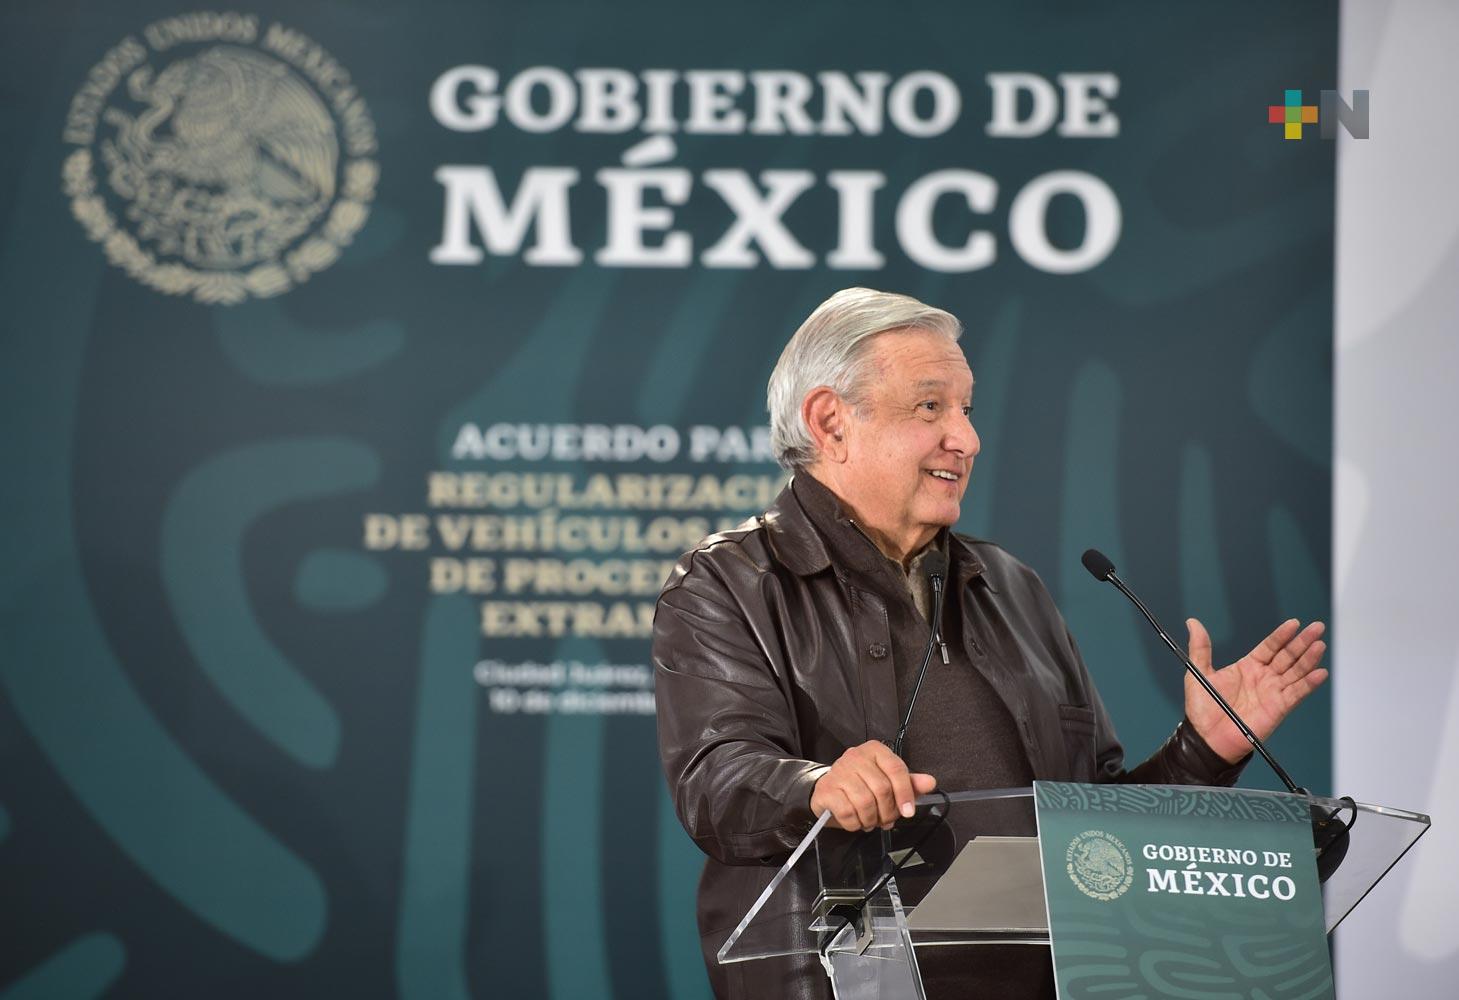 Presidente firmó acuerdo para regularizar vehículos extranjeros en Chihuahua